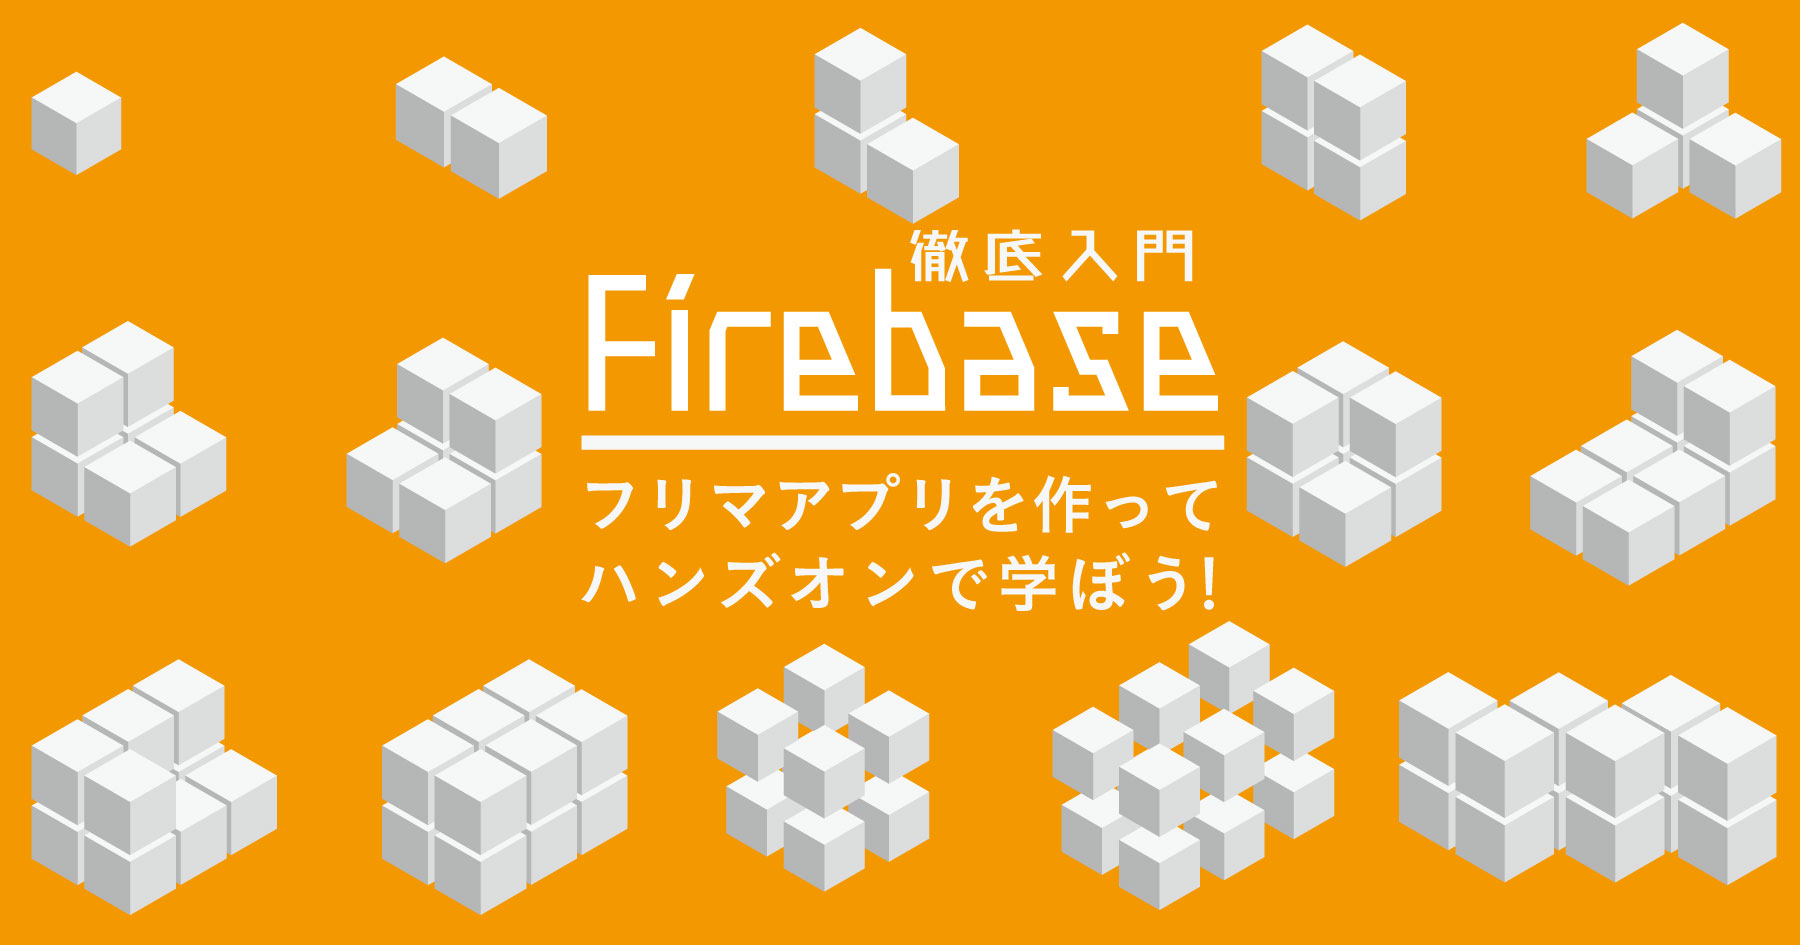 Firebase入門 フリマアプリを作りながら、認証・Firestore・Cloud Functionsの使い方を学ぼう！